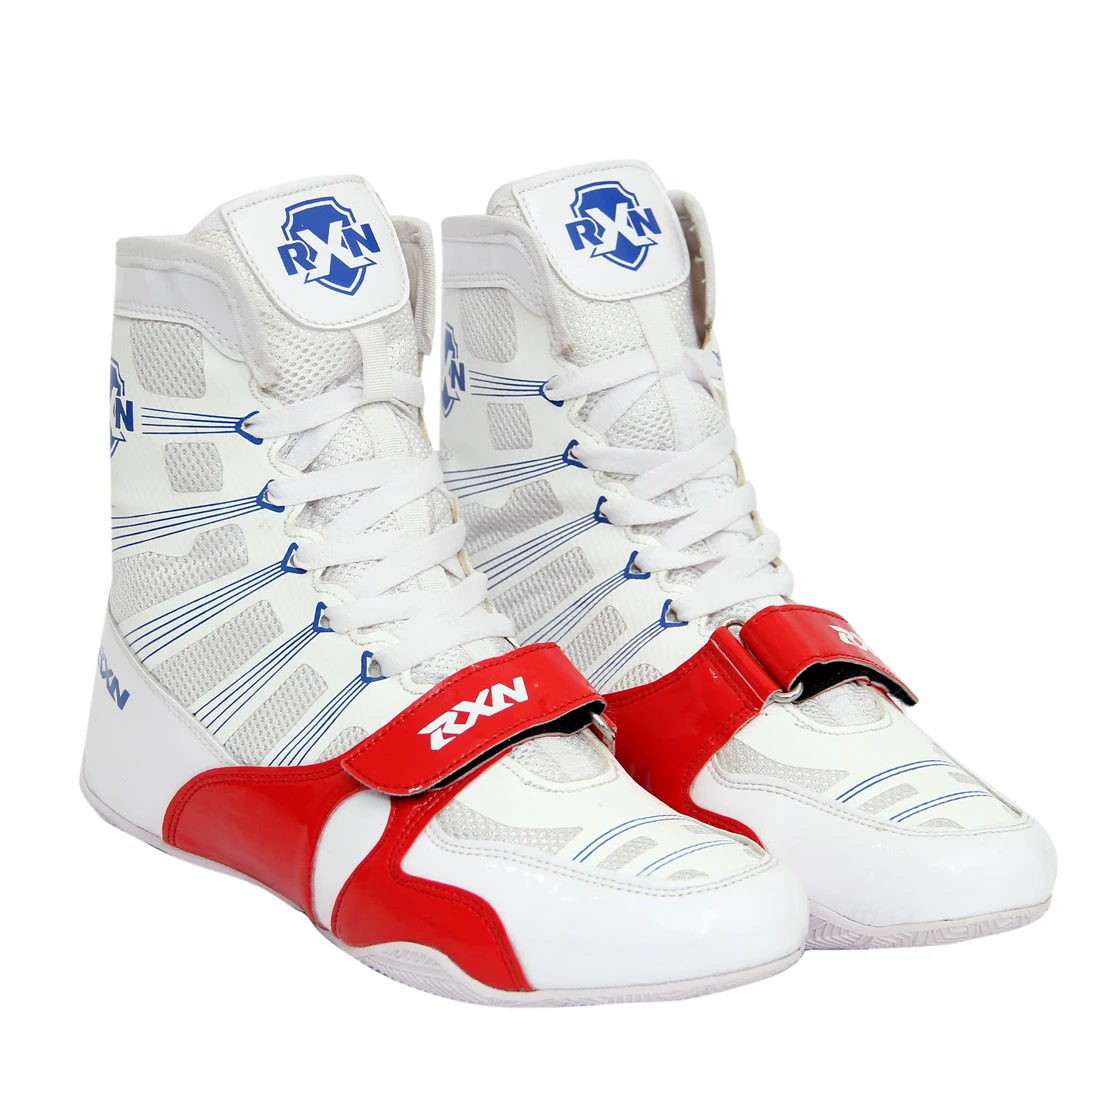 Li Ning Boxing Shoes | vlr.eng.br